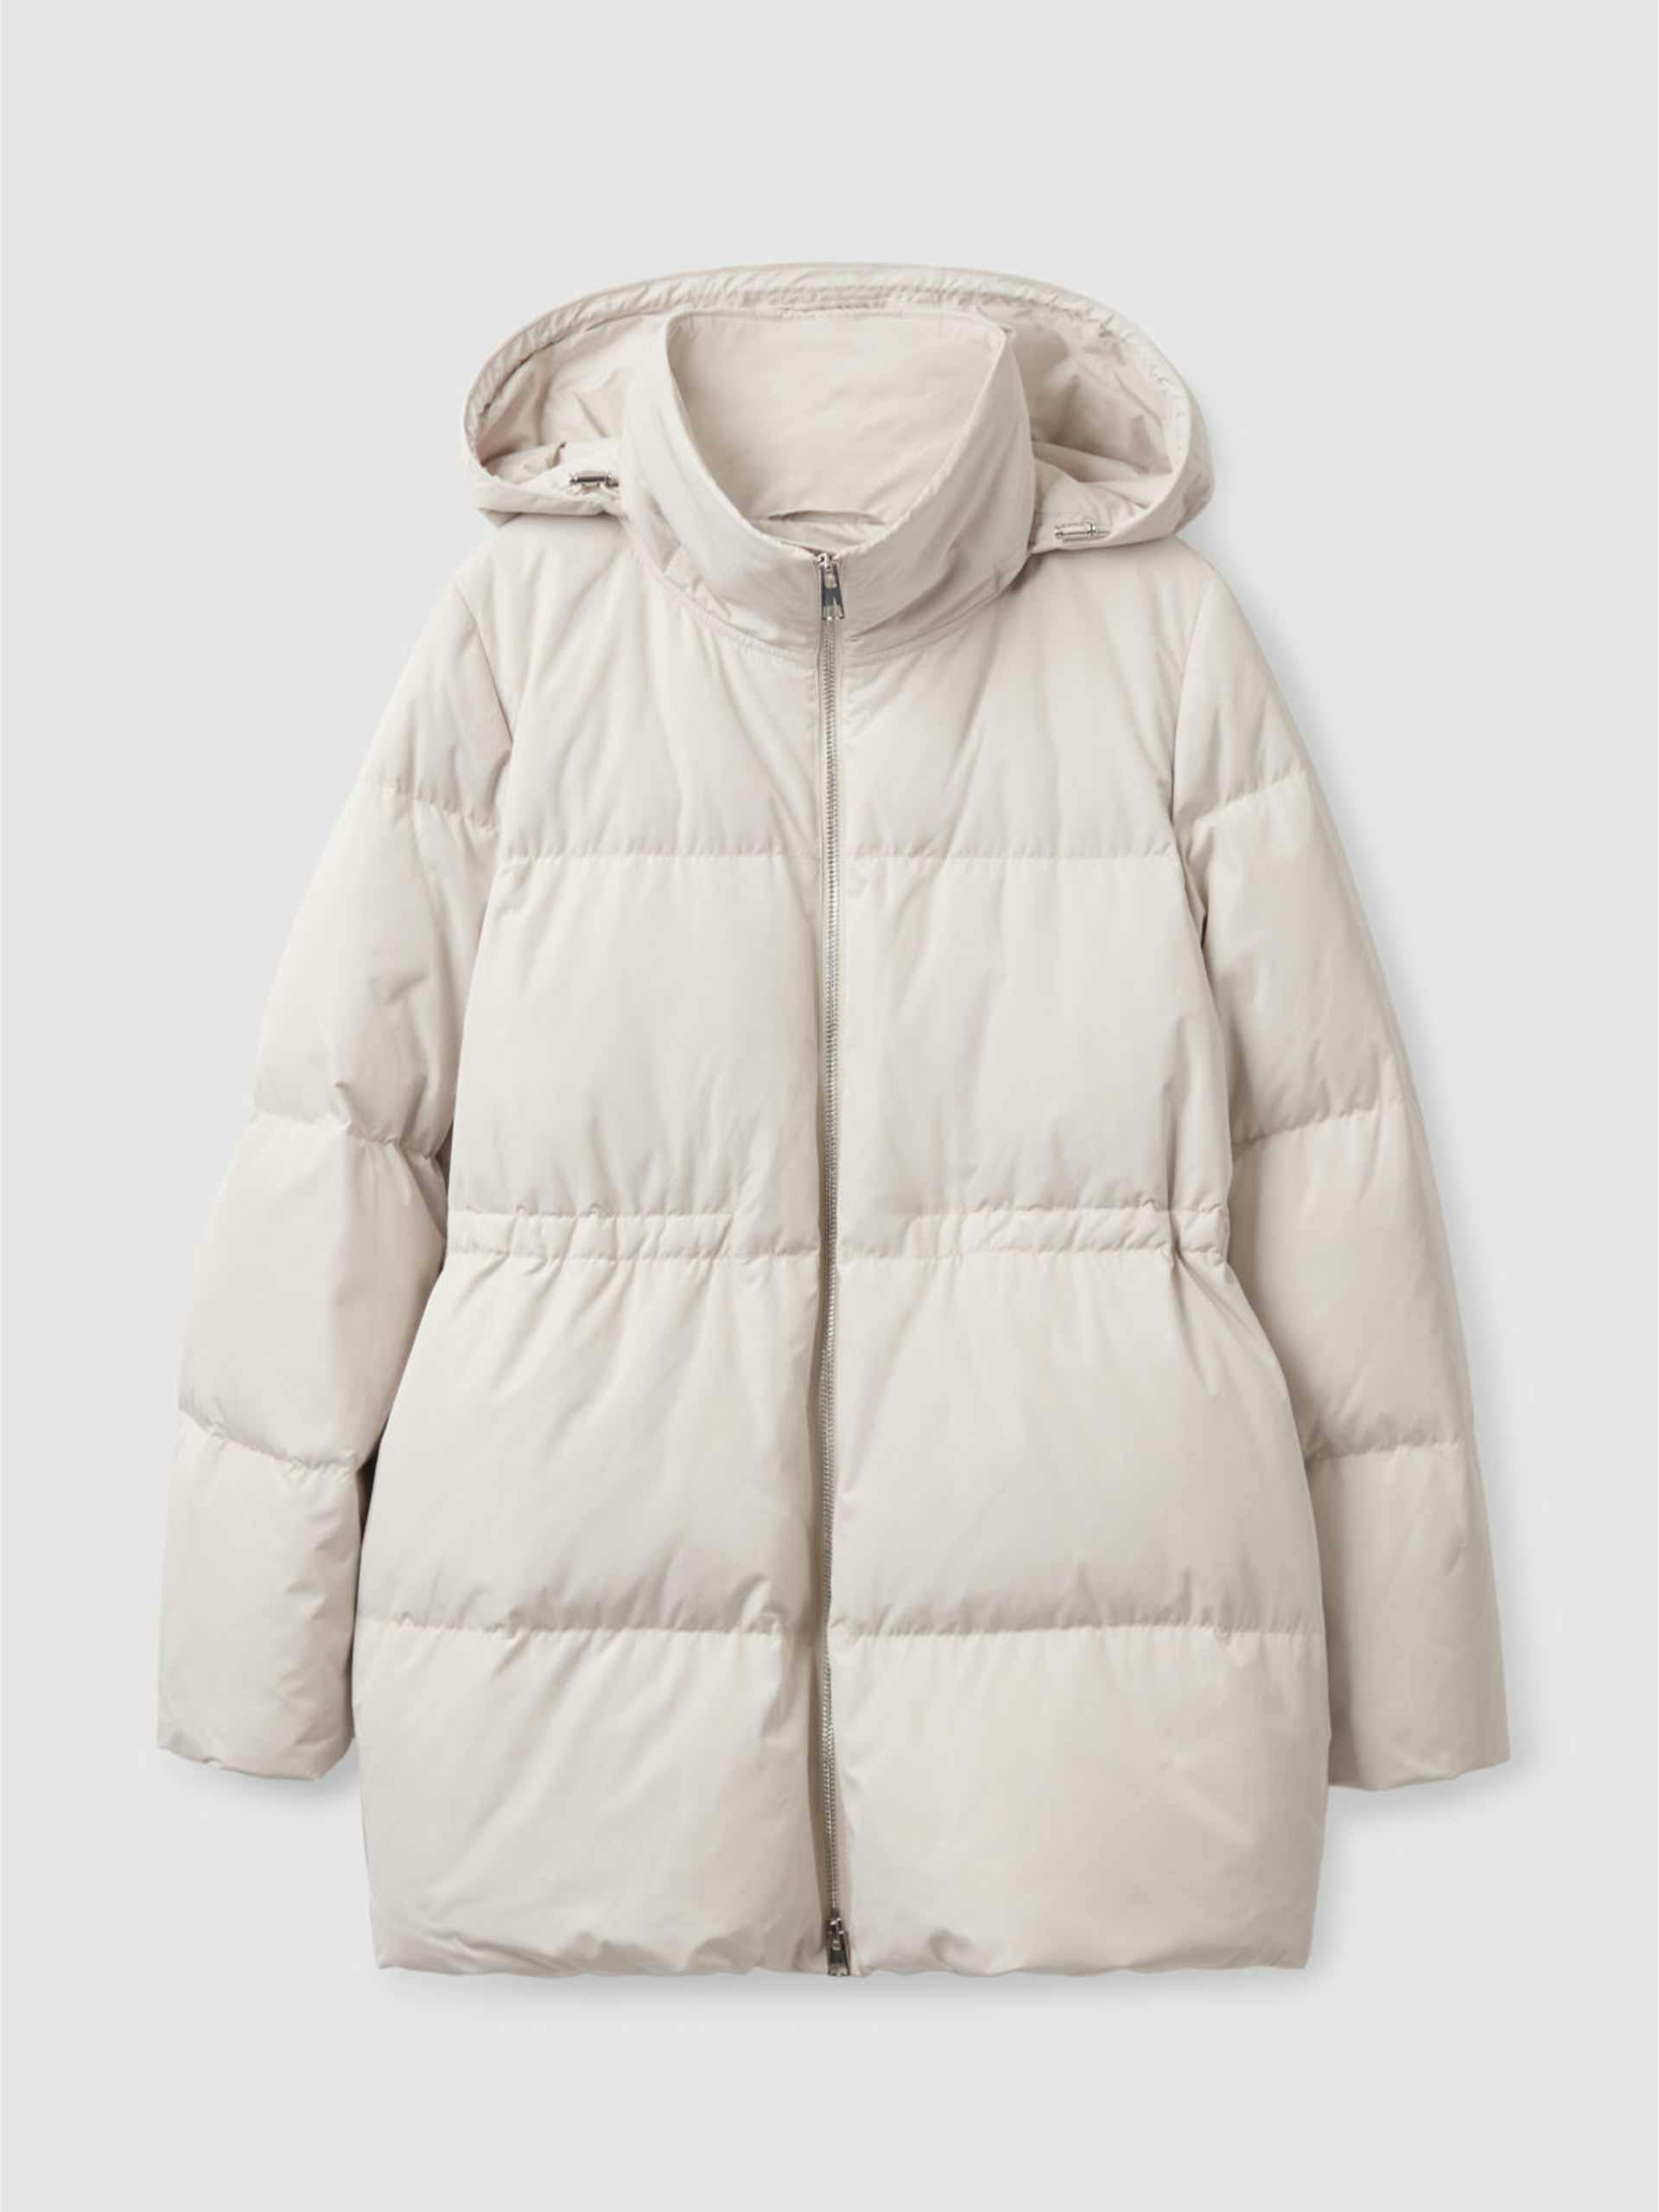 Redown cream puffer jacket